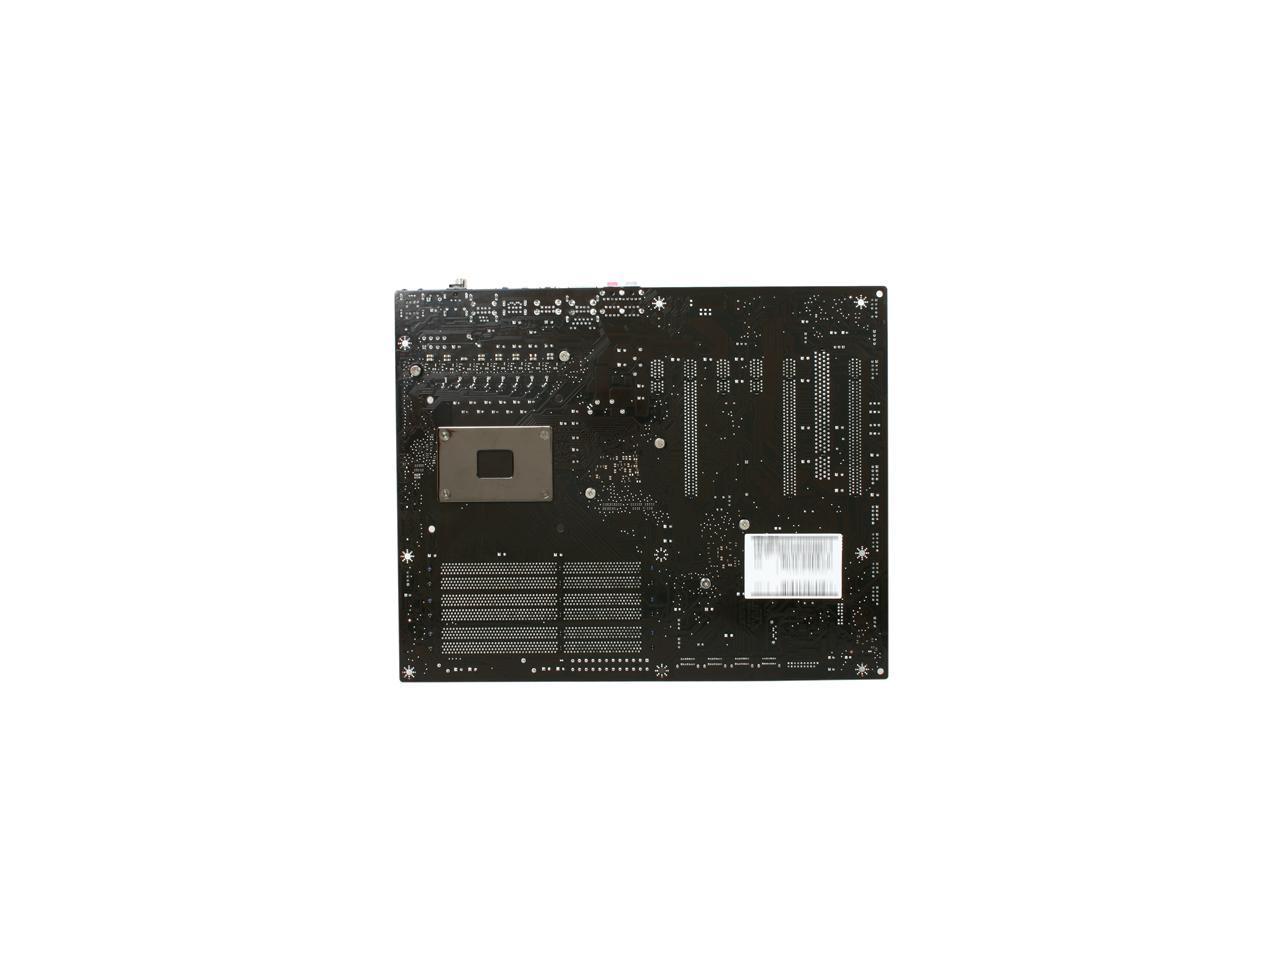 MSI X58A-GD45 LGA 1366 ATX Intel Motherboard - Newegg.com